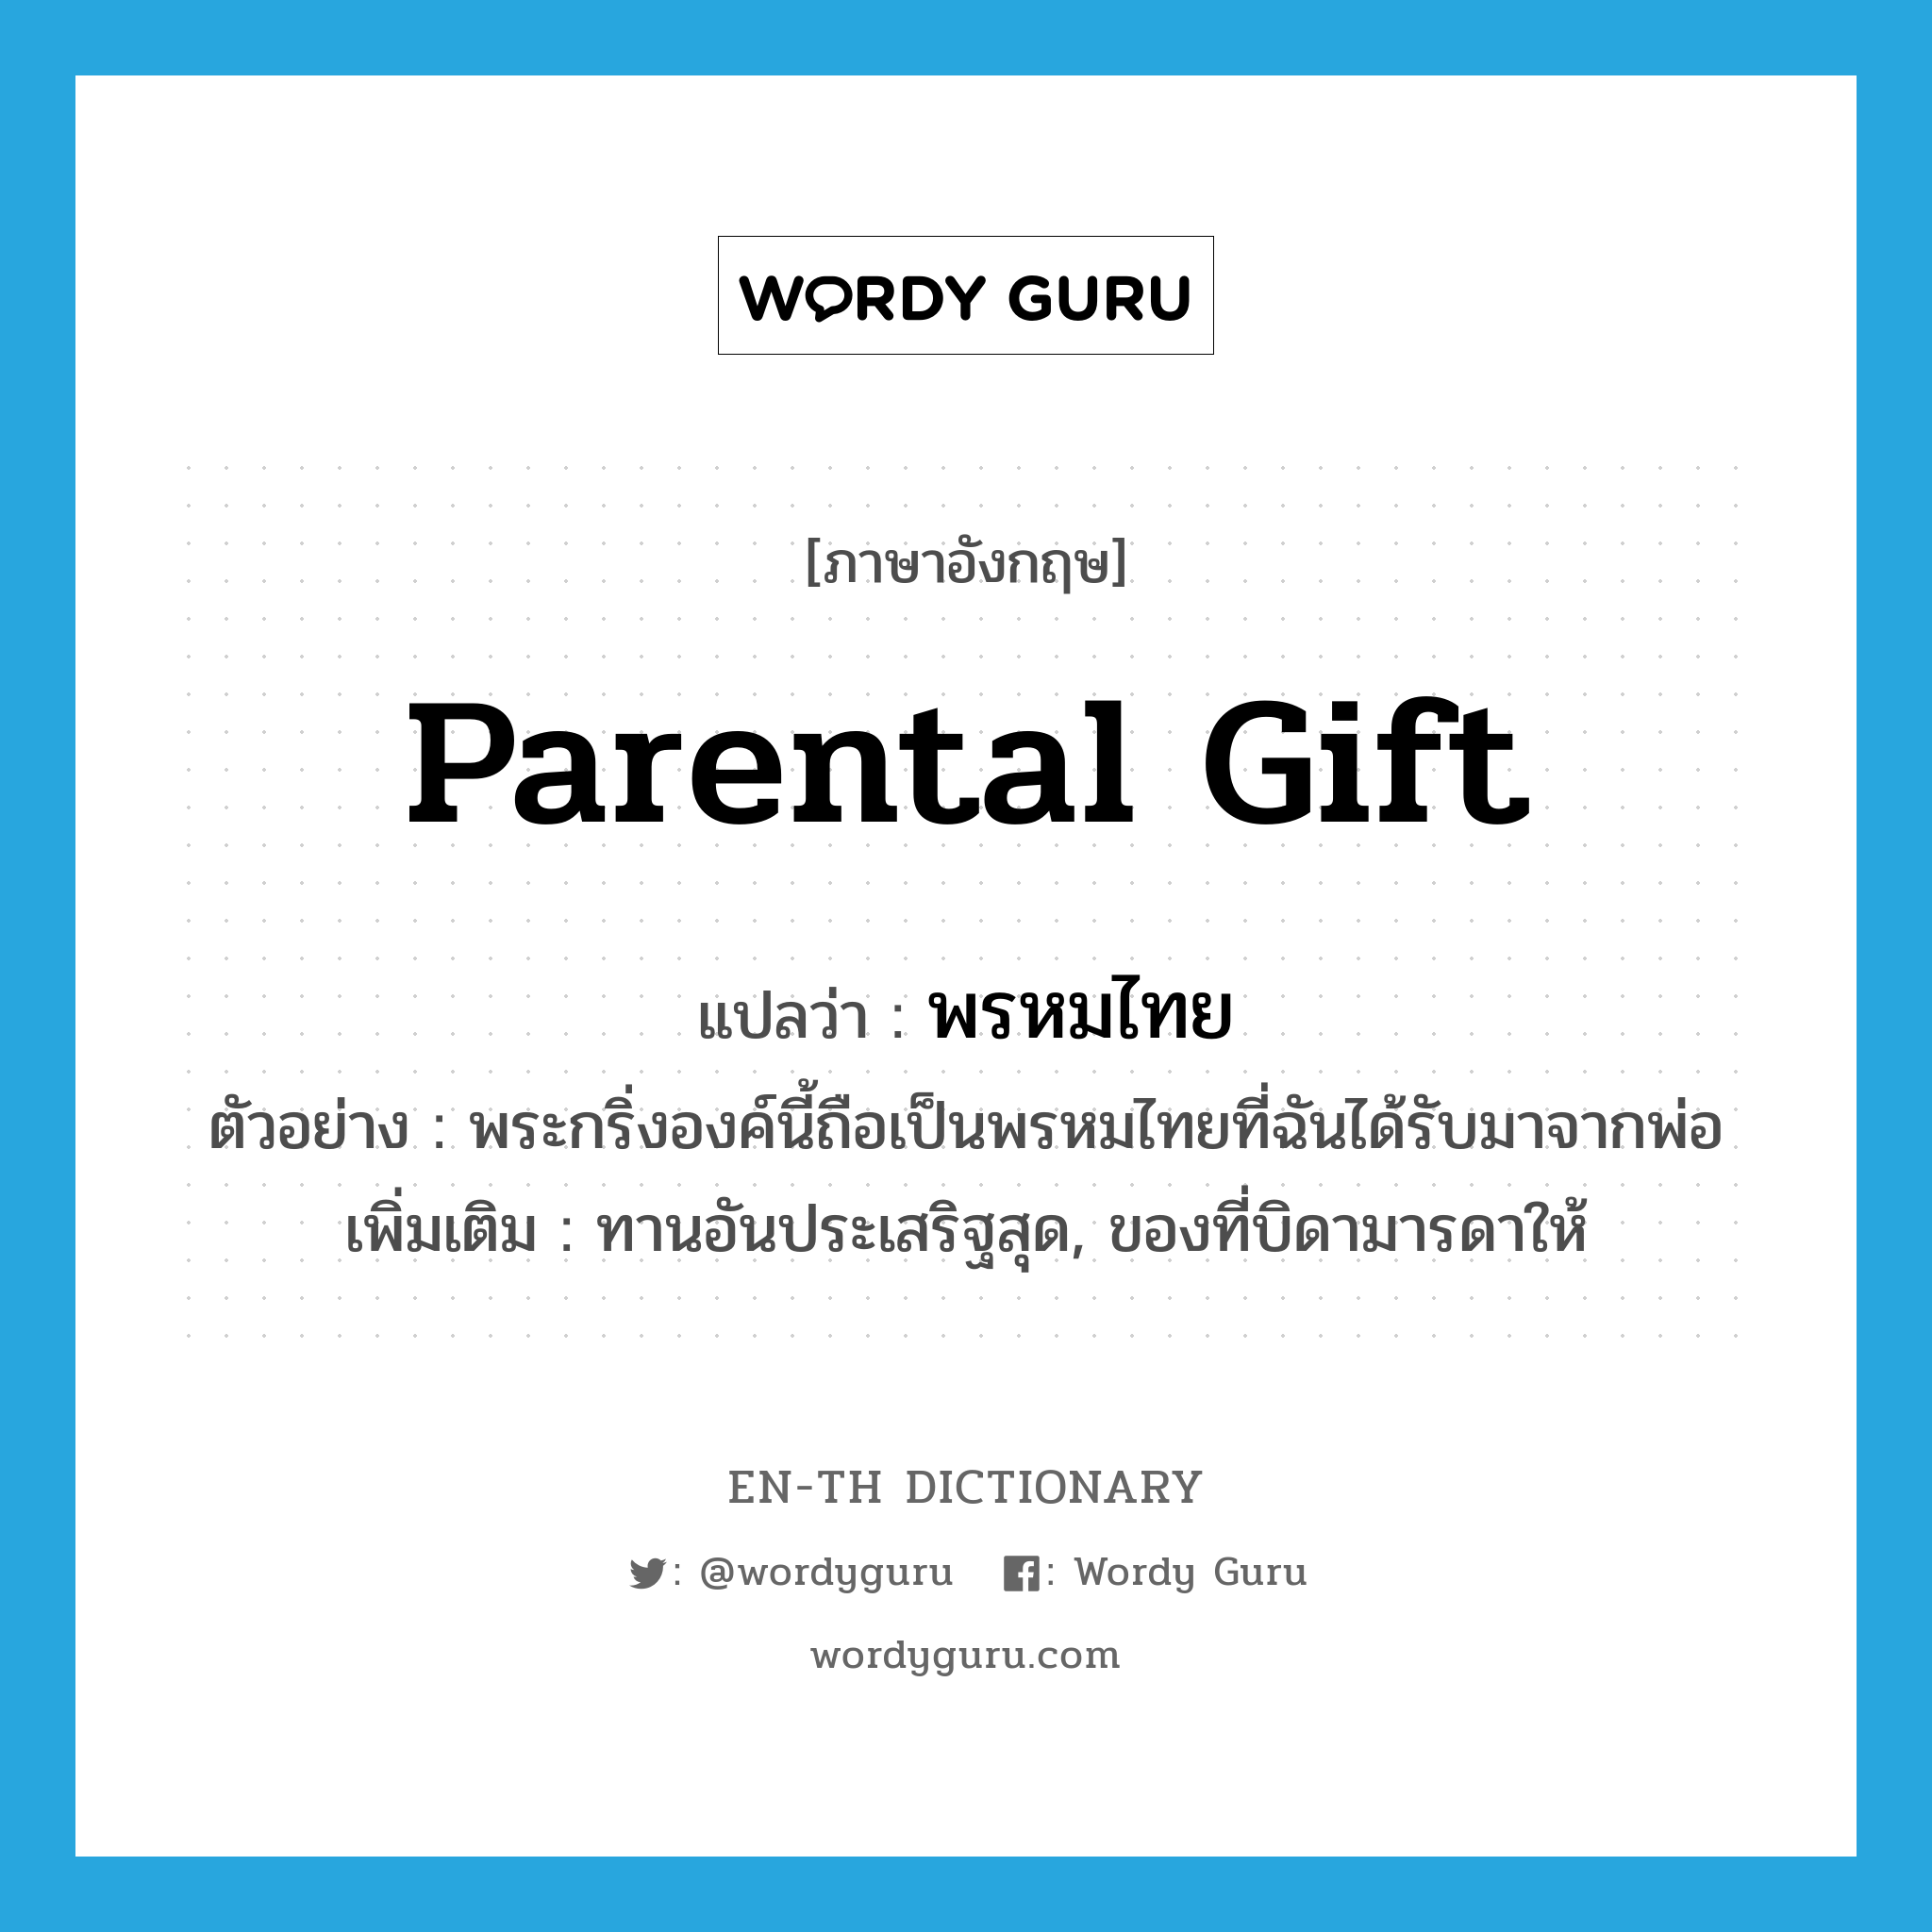 parental gift แปลว่า?, คำศัพท์ภาษาอังกฤษ parental gift แปลว่า พรหมไทย ประเภท N ตัวอย่าง พระกริ่งองค์นี้ถือเป็นพรหมไทยที่ฉันได้รับมาจากพ่อ เพิ่มเติม ทานอันประเสริฐสุด, ของที่บิดามารดาให้ หมวด N